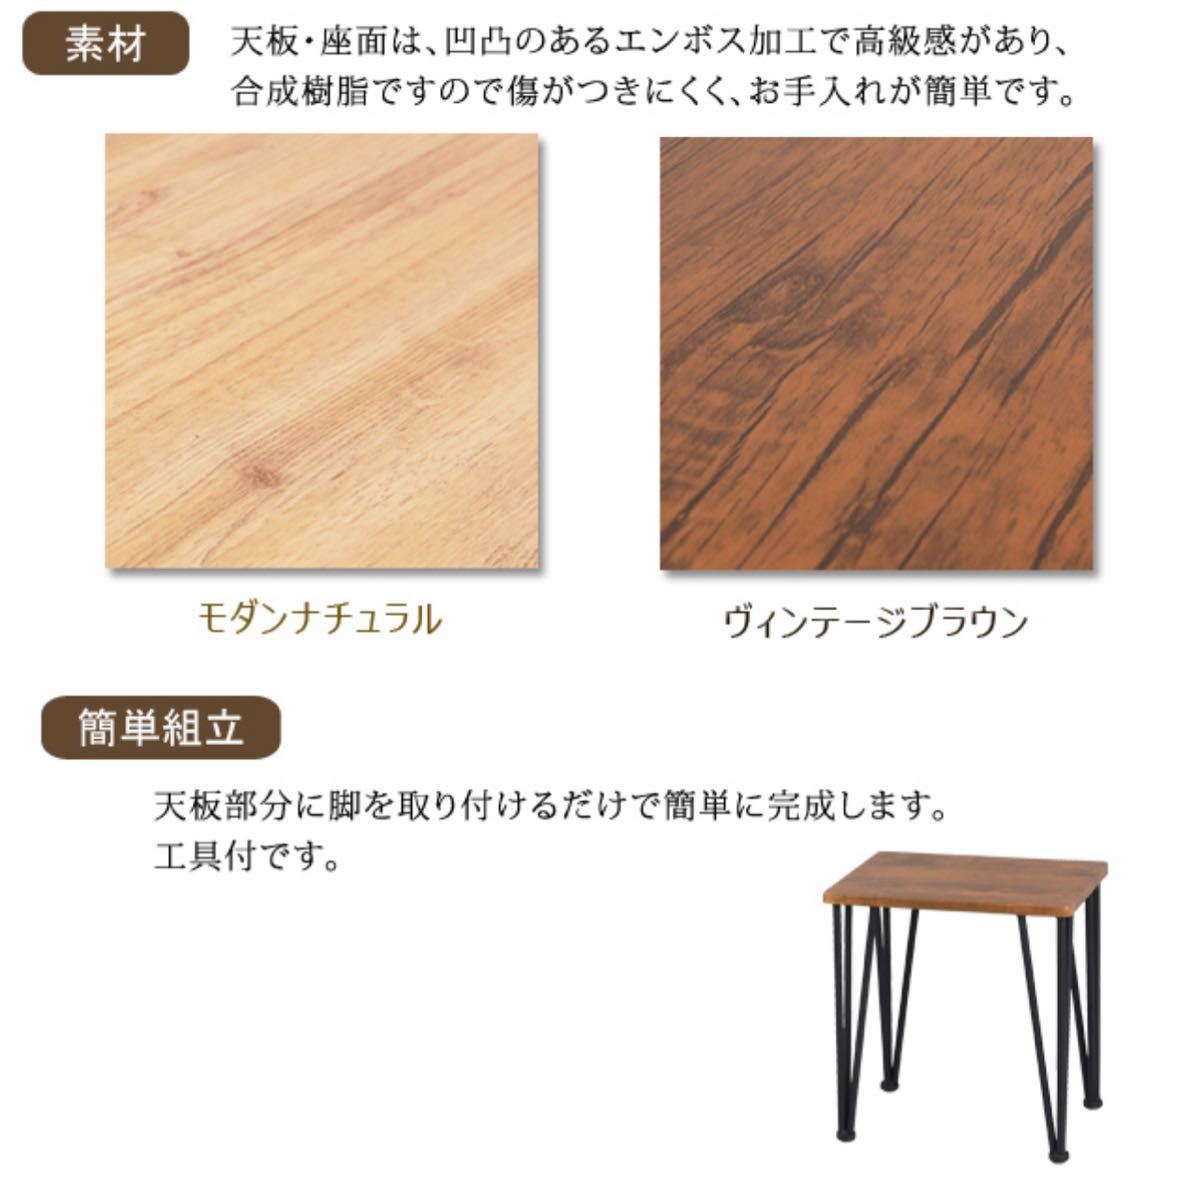 【送料無料】ダイニング3点セット テーブル 机 チェア 椅子 ブラウン 木目調_画像4